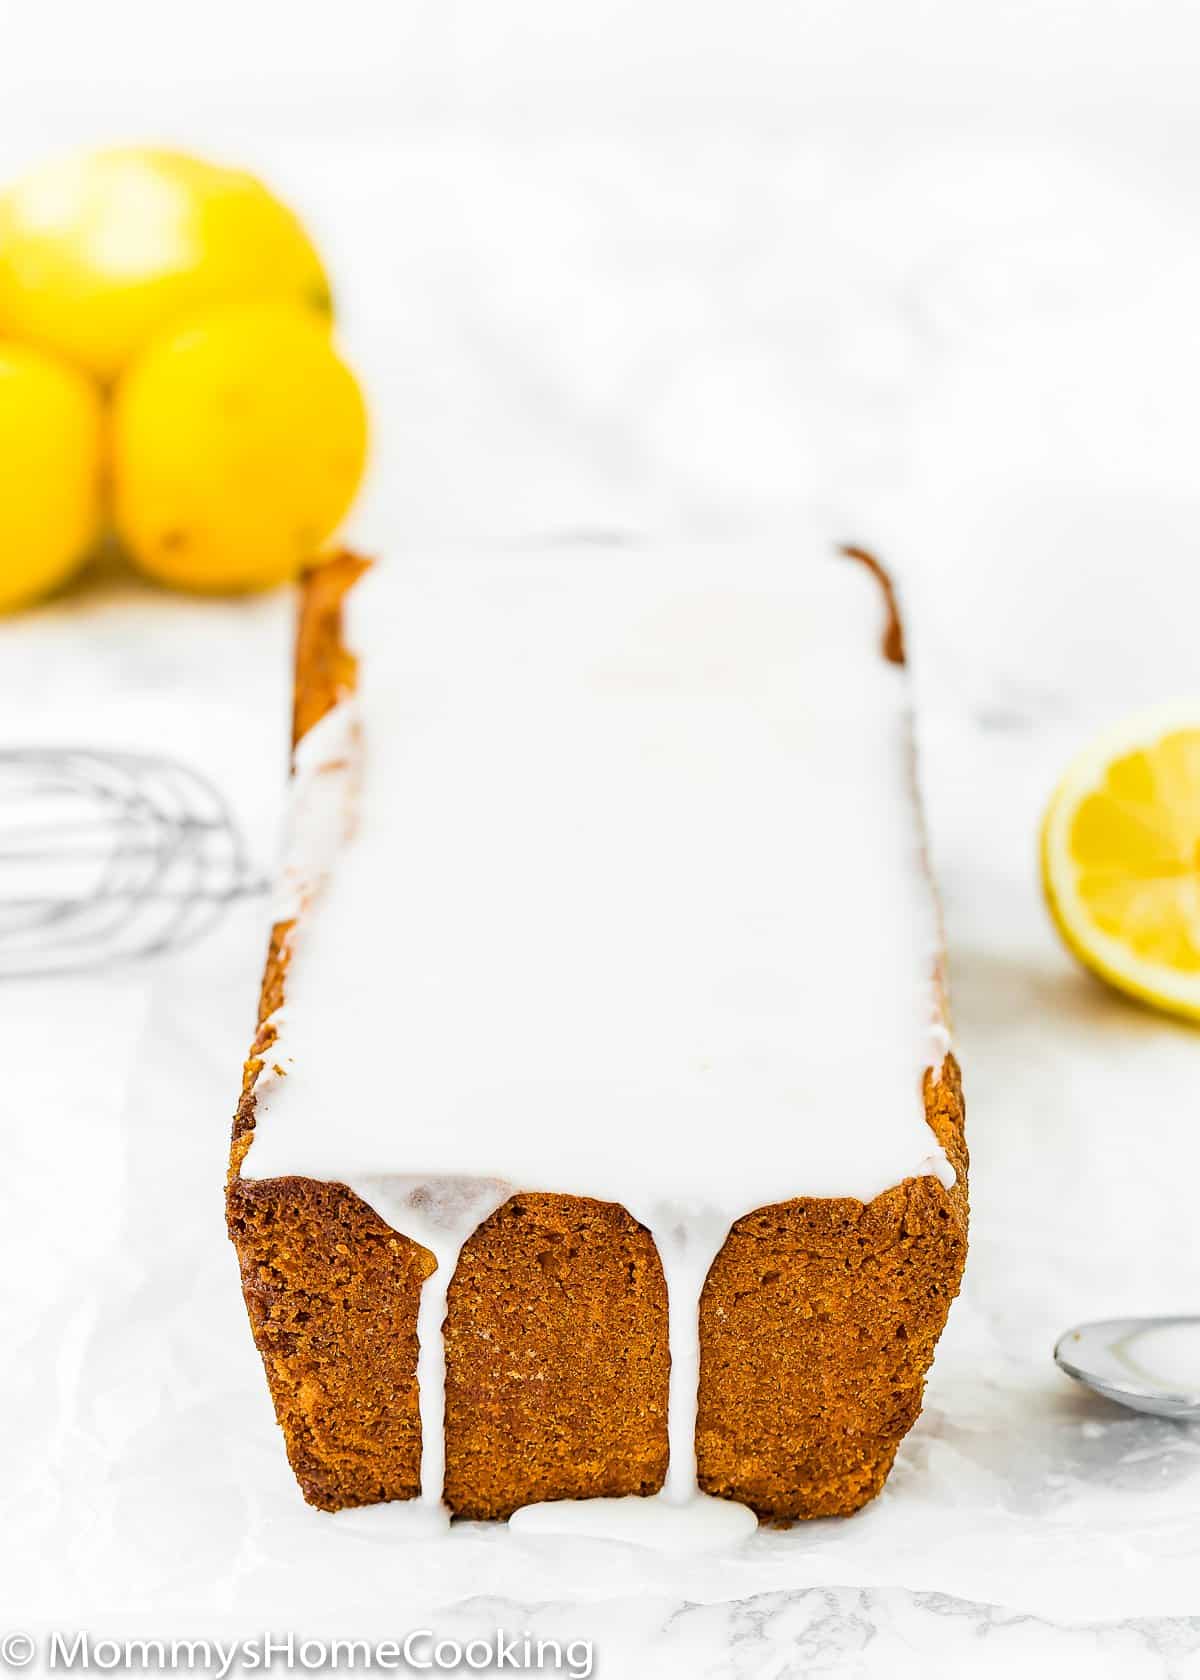 Eggless Lemon Pound Cake with glaze and fresh lemons on the background.